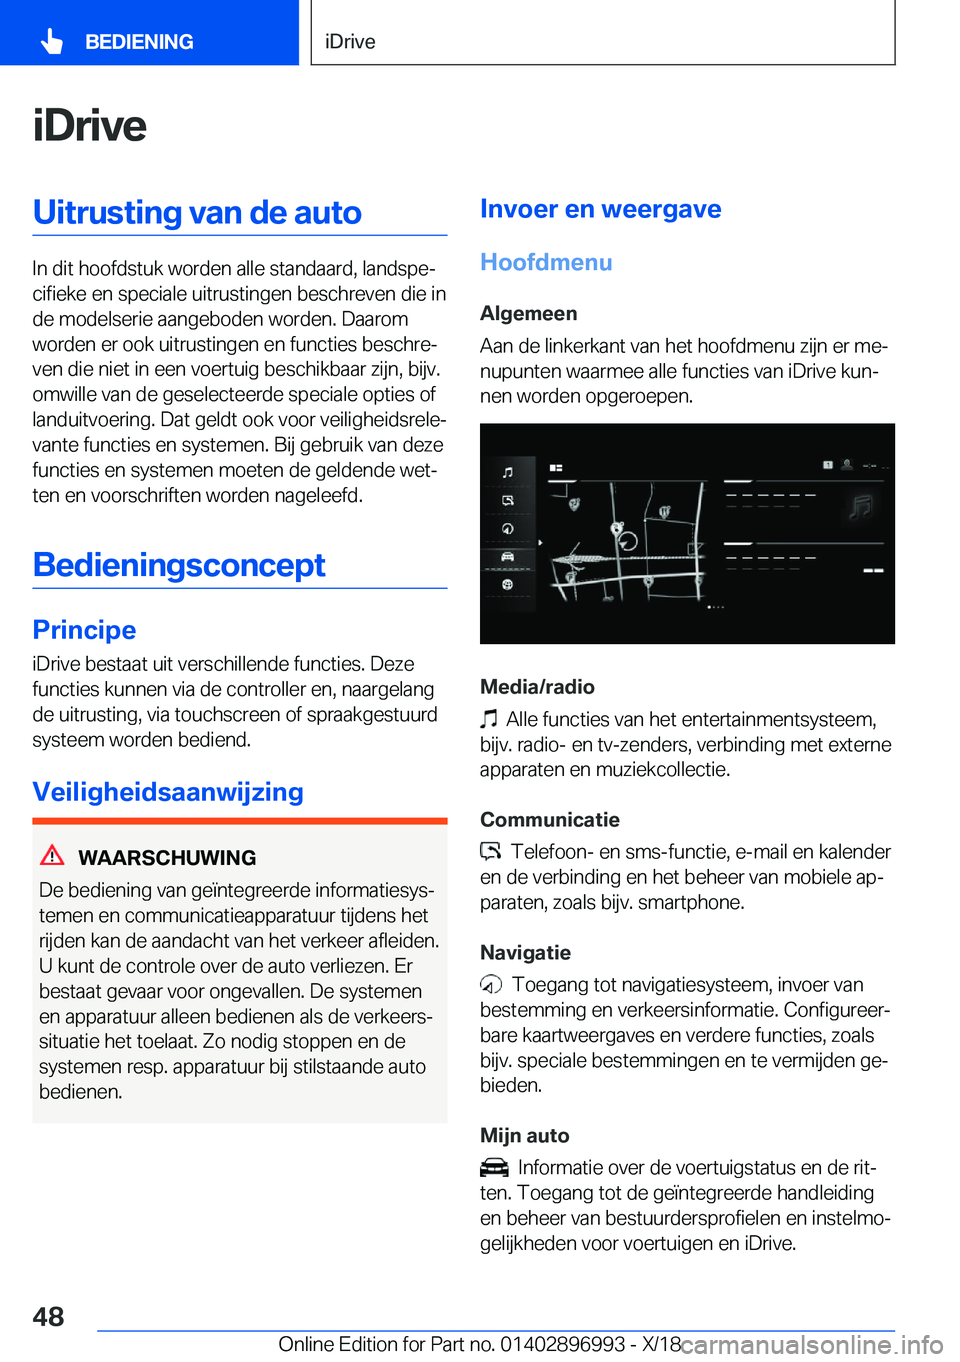 BMW Z4 2019  Instructieboekjes (in Dutch) �i�D�r�i�v�e�U�i�t�r�u�s�t�i�n�g��v�a�n��d�e��a�u�t�o
�I�n��d�i�t��h�o�o�f�d�s�t�u�k��w�o�r�d�e�n��a�l�l�e��s�t�a�n�d�a�a�r�d�,��l�a�n�d�s�p�ej�c�i�f�i�e�k�e��e�n��s�p�e�c�i�a�l�e��u�i�t�